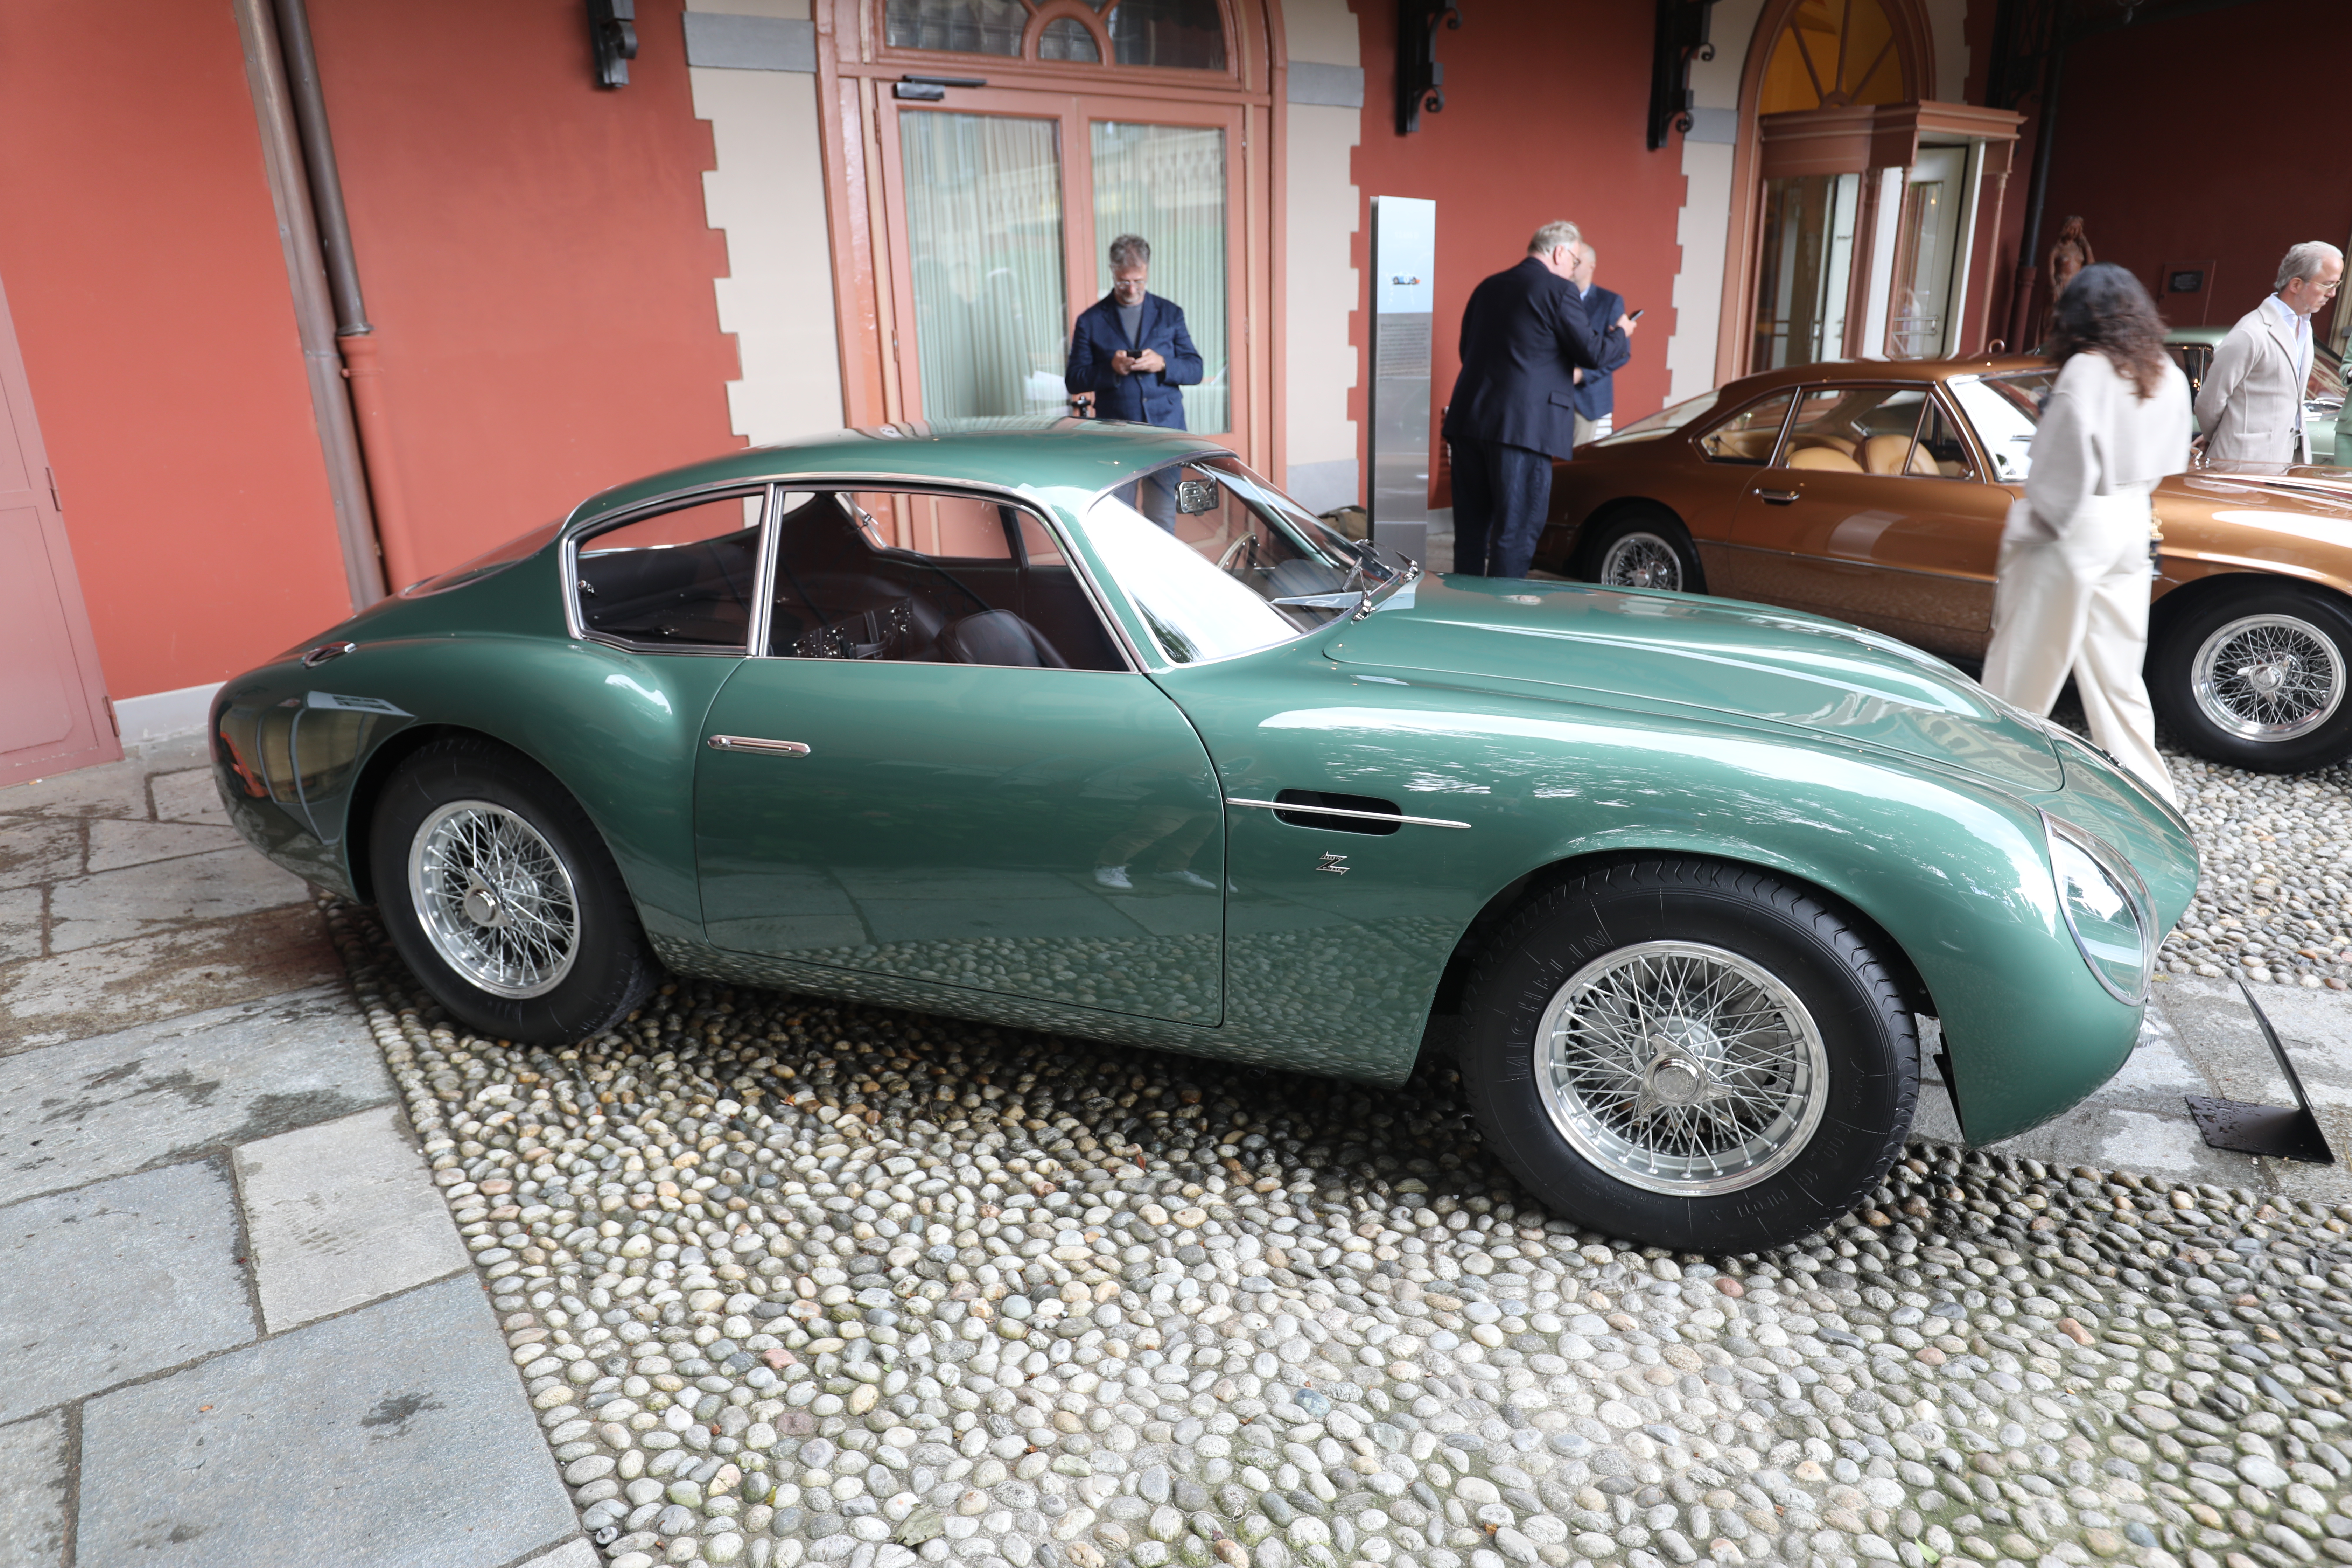 1960 Aston Martin DB4 GT Zagato som eies av nordmannen Andreas Halvorsen. Han kunne imidlertid ikke være til stede selv i Italia.